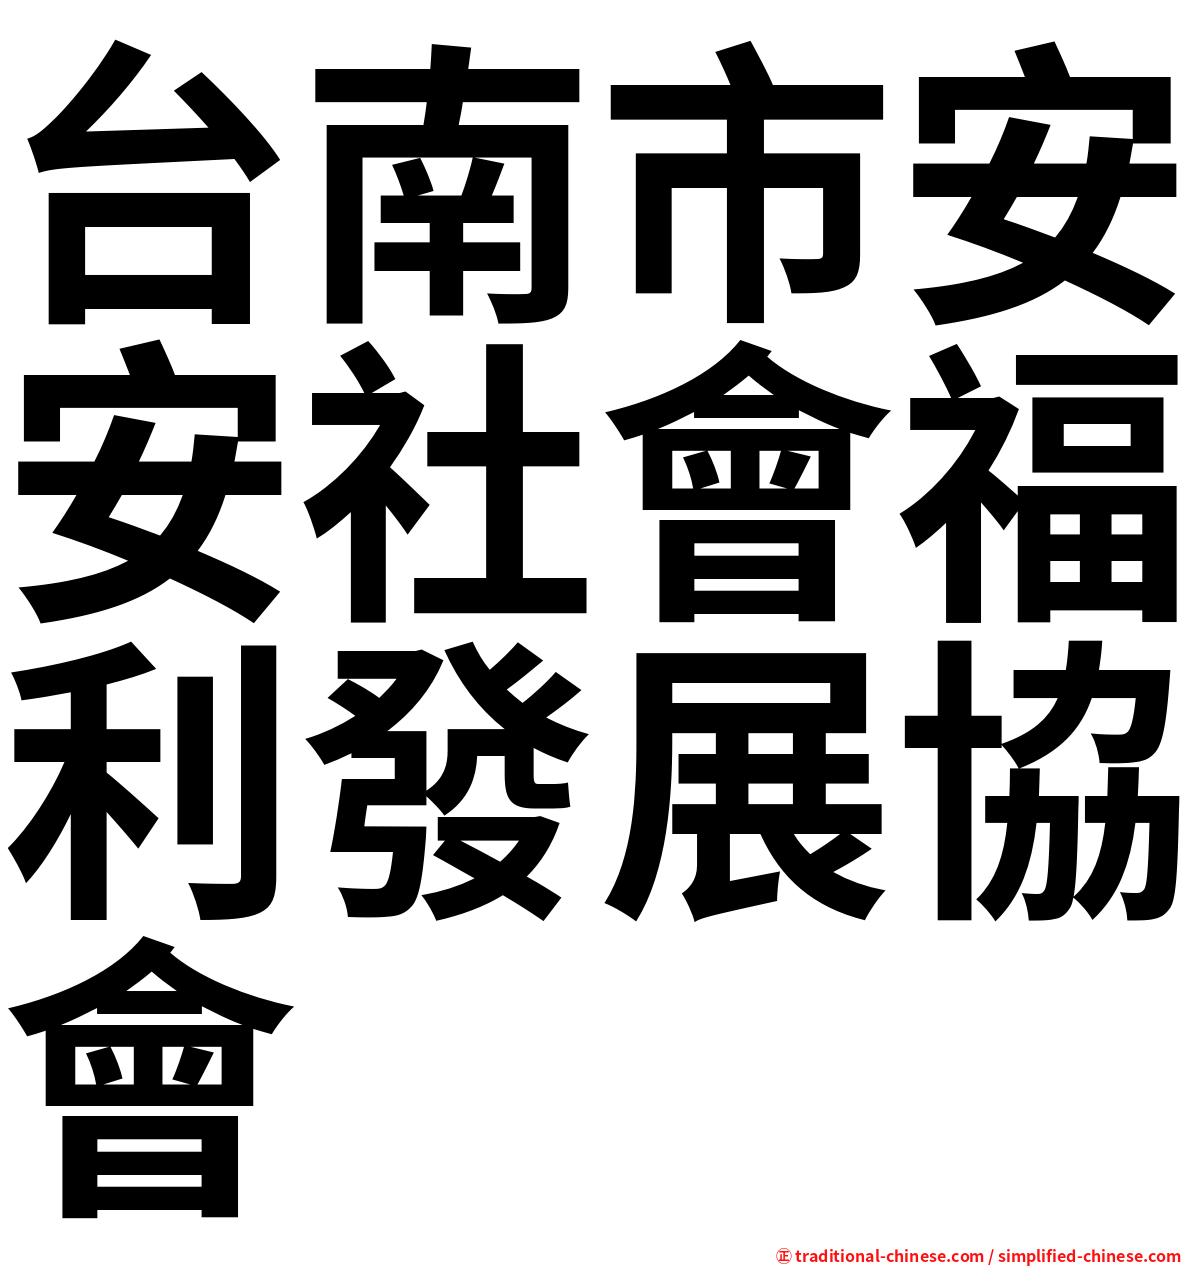 台南市安安社會福利發展協會